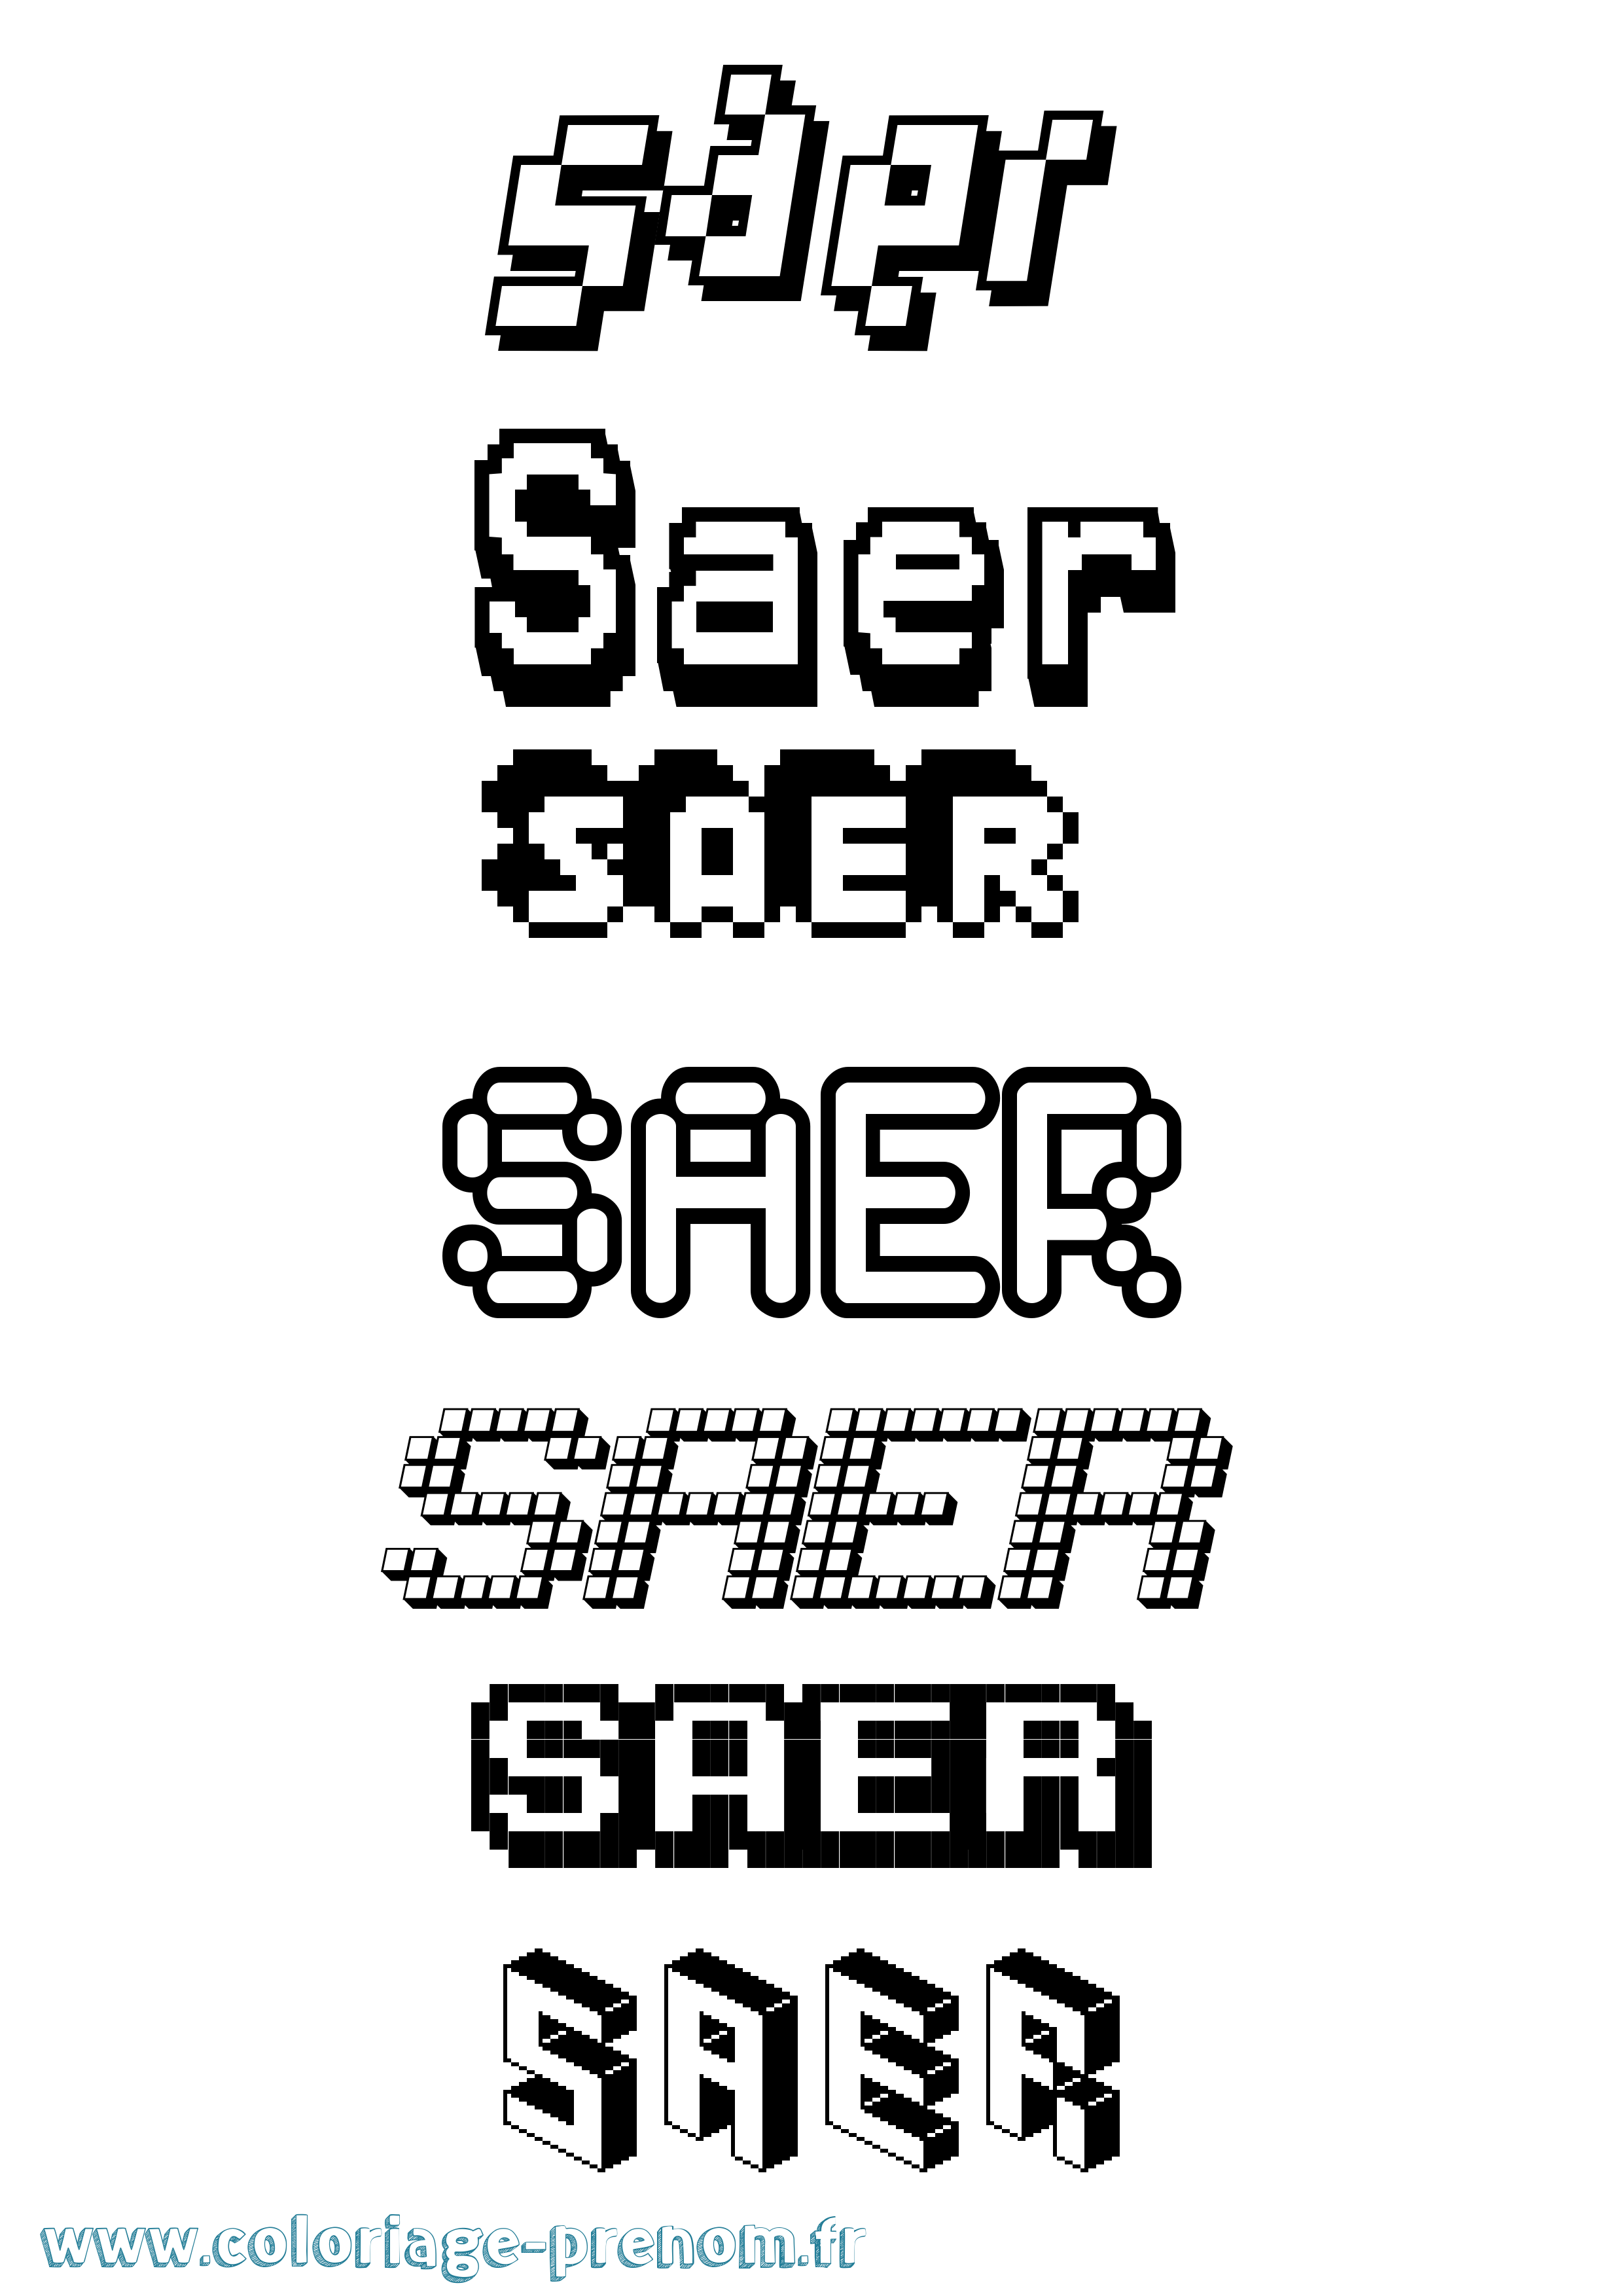 Coloriage prénom Saer Pixel